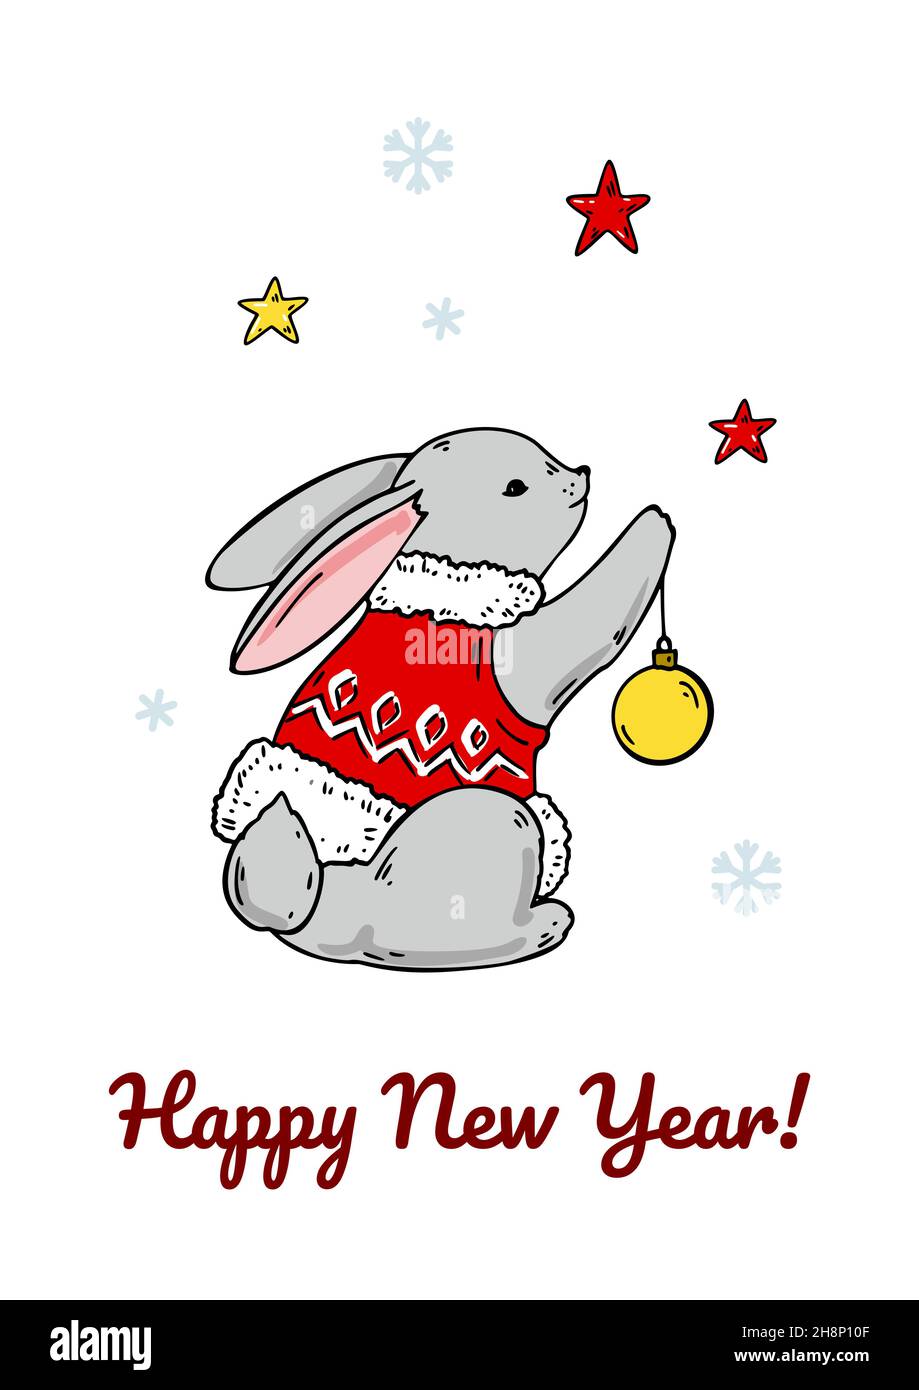 Vertical Joyeux Noël et bonne année carte de voeux avec un joli lapin.Illustration vectorielle dessinée à la main Illustration de Vecteur